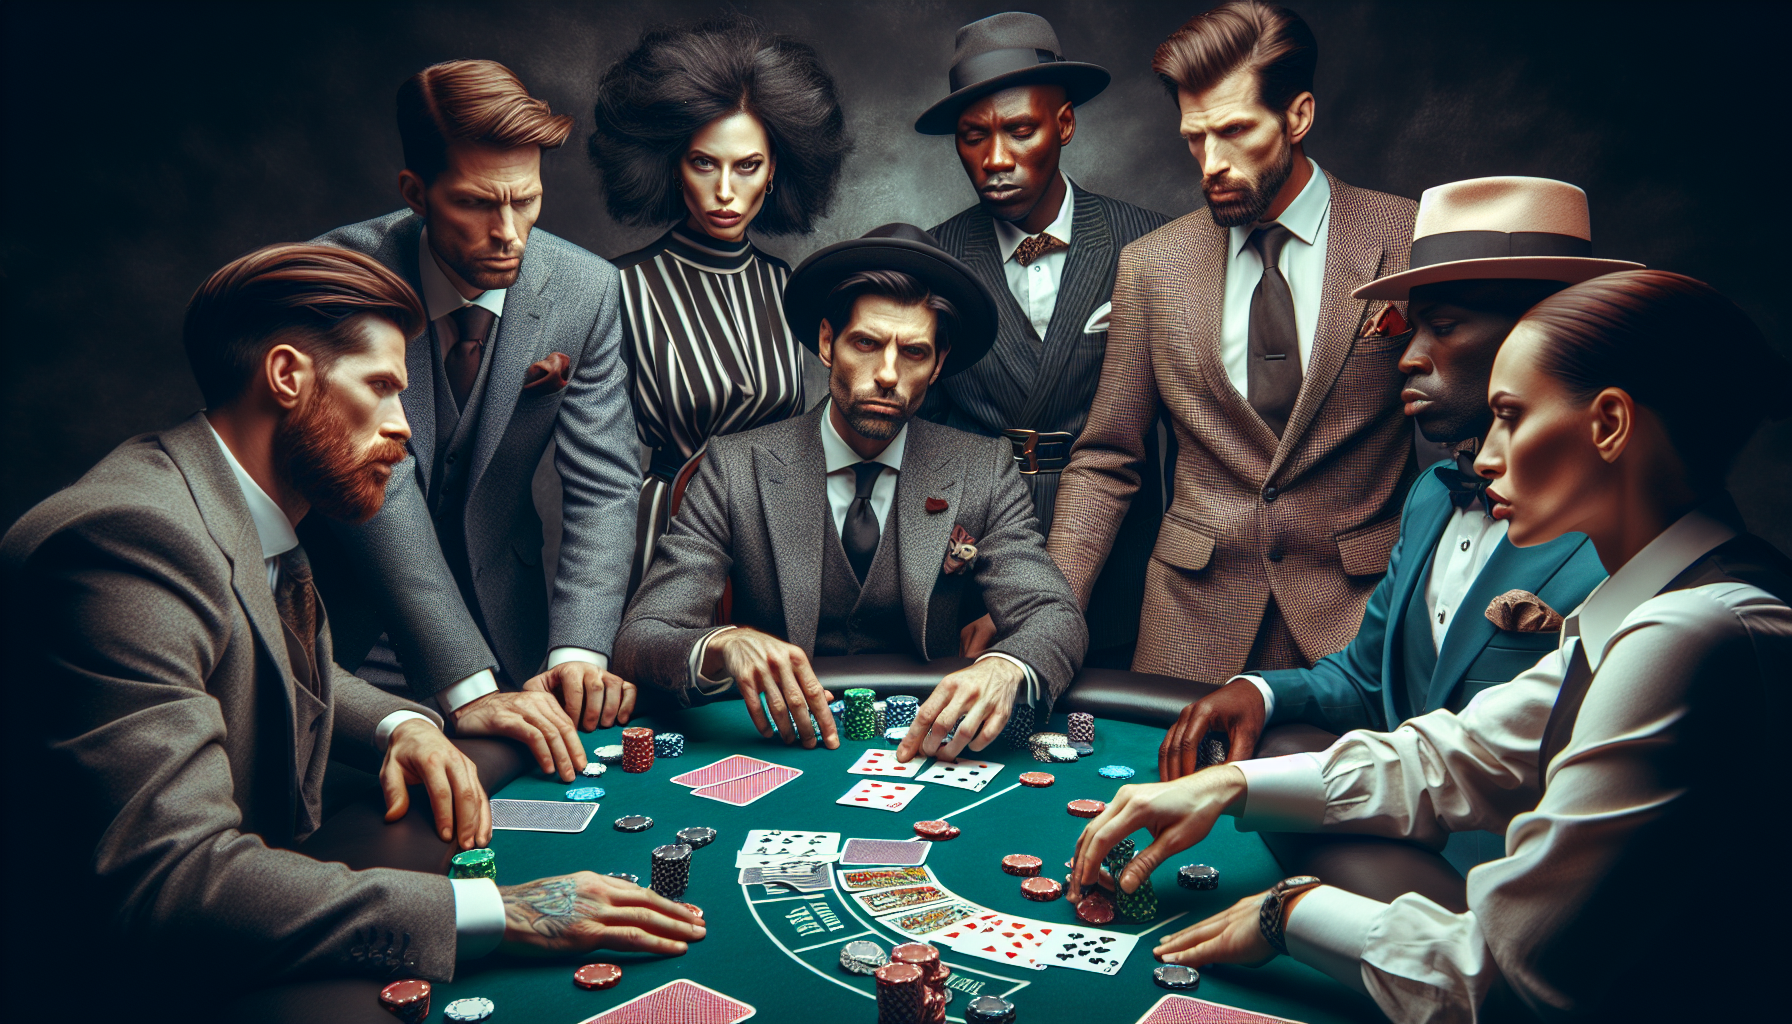 découvrez l'art du bluff au poker et améliorez vos stratégies pour remporter la victoire. apprenez à maîtriser vos émotions et à anticiper les coups de vos adversaires avec notre guide pratique sur le bluff au poker.